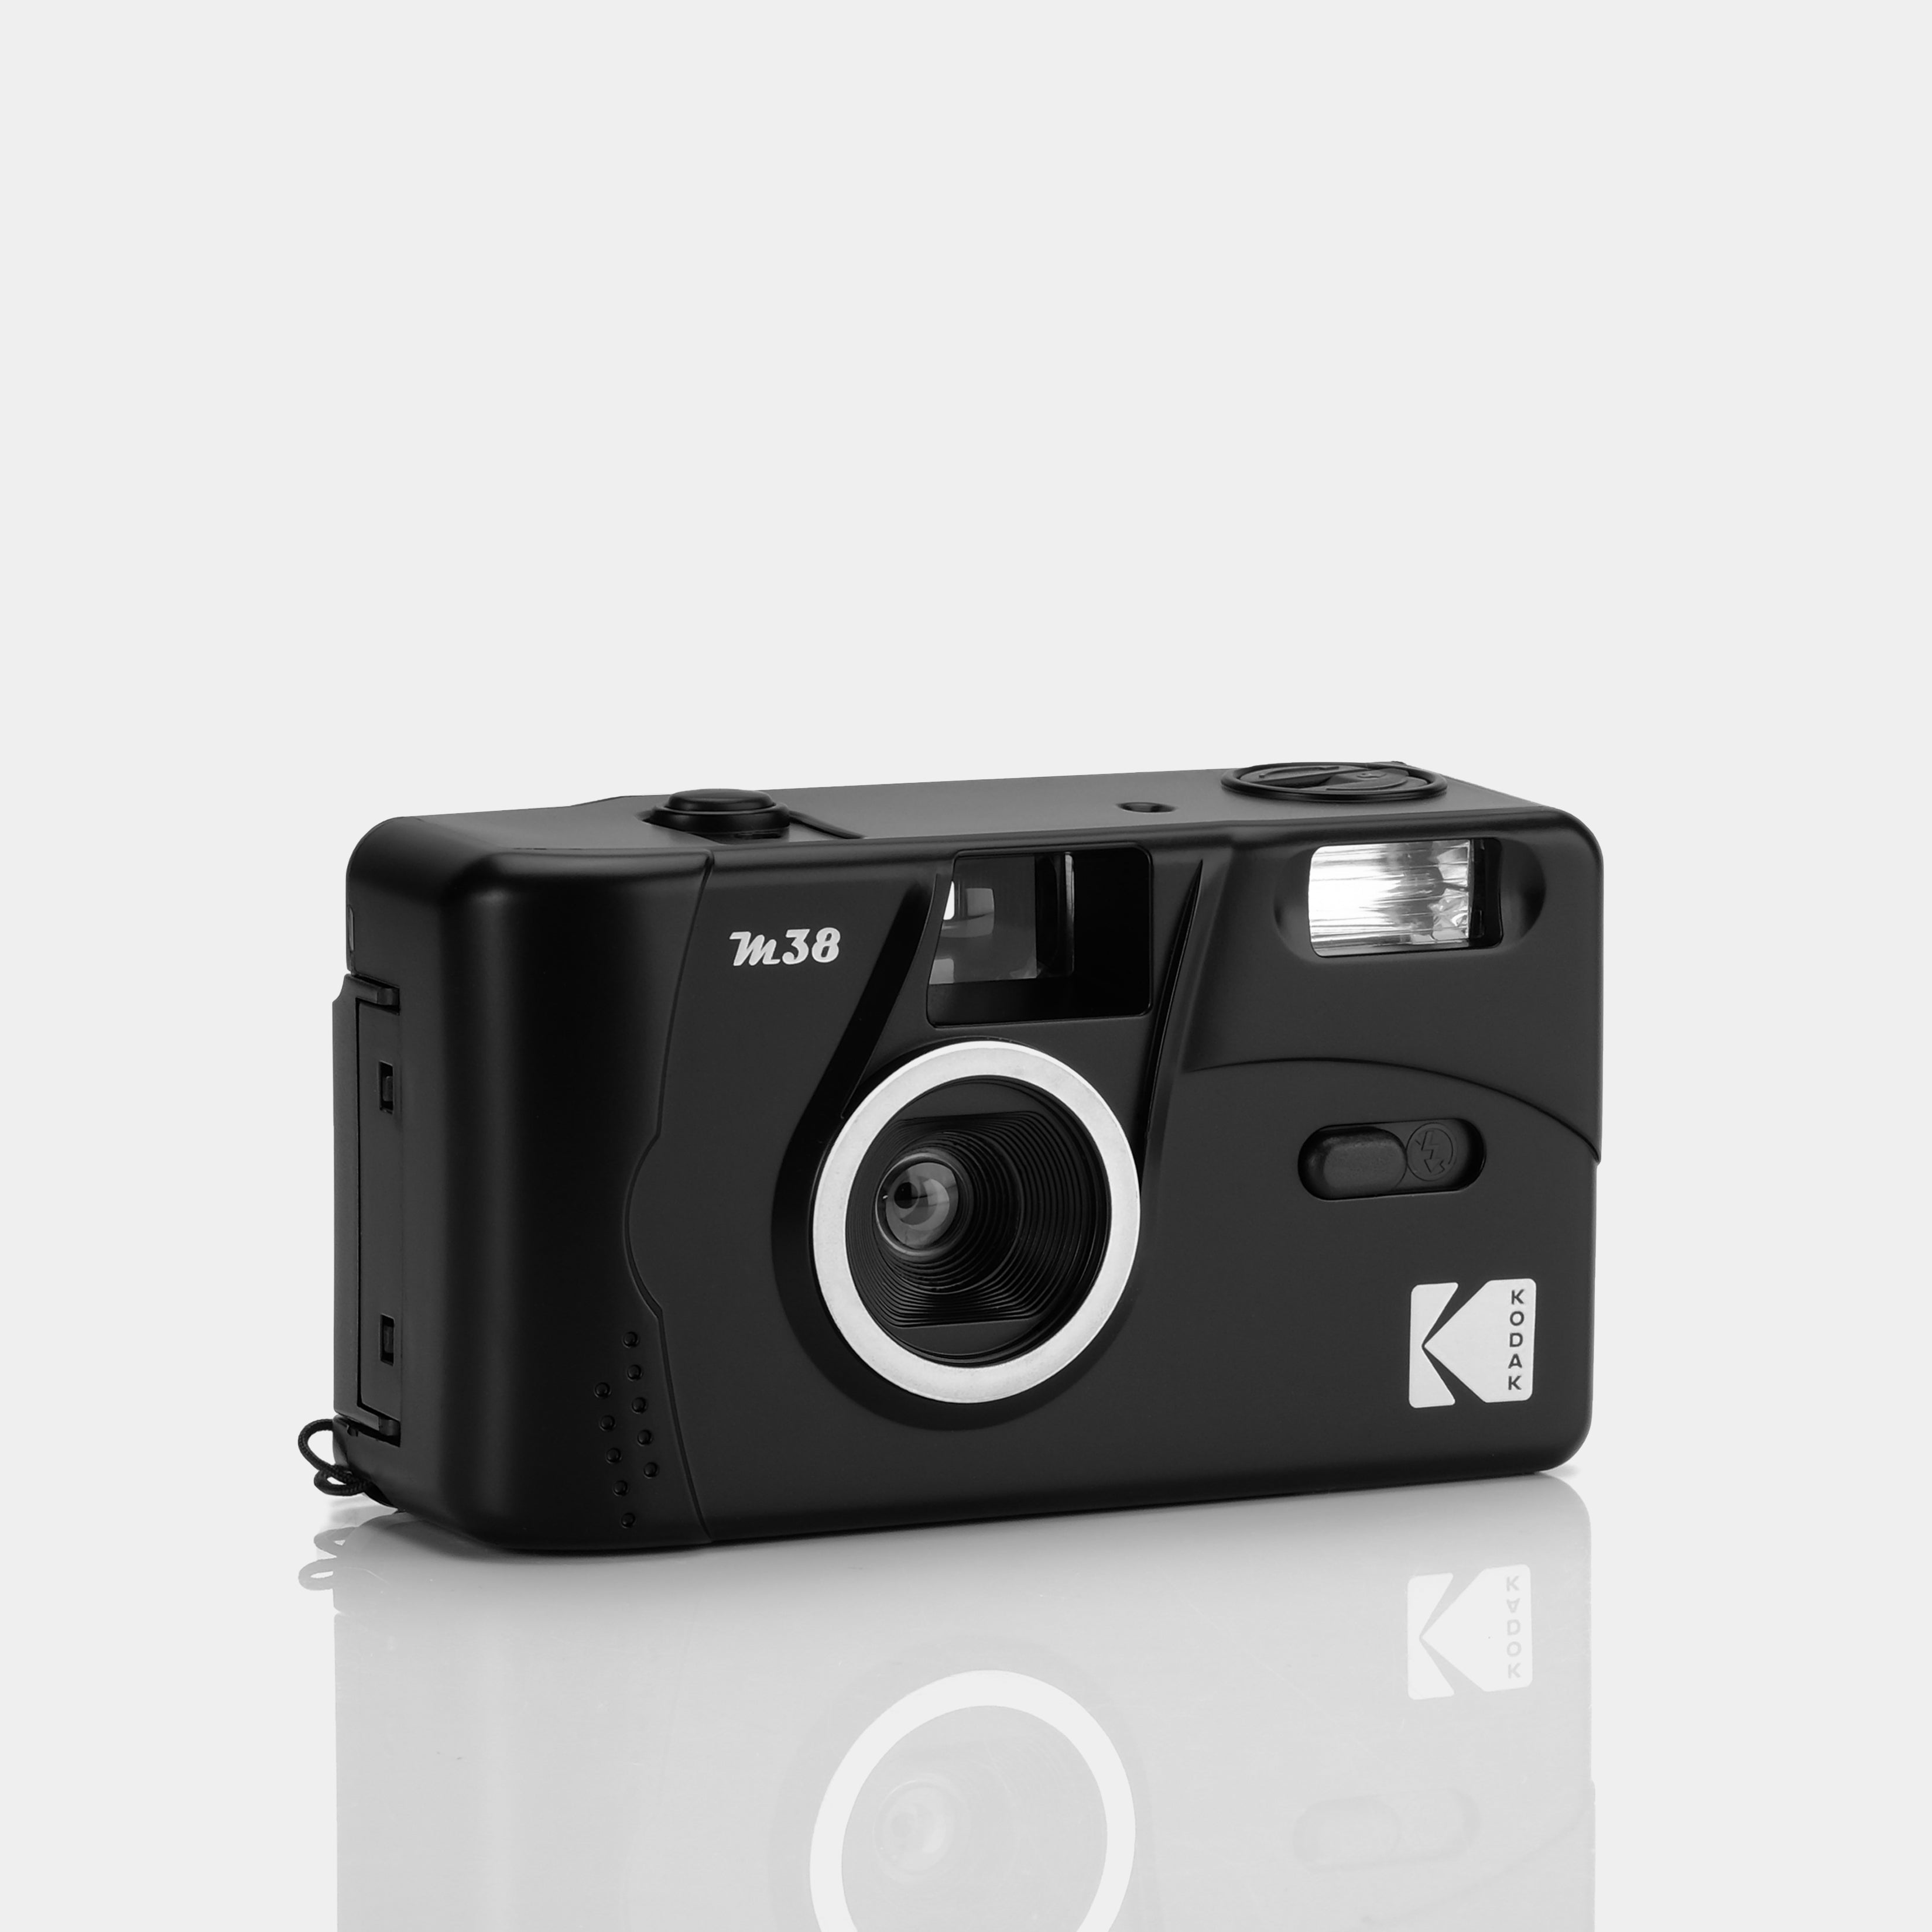 KODAK Film Camera M38